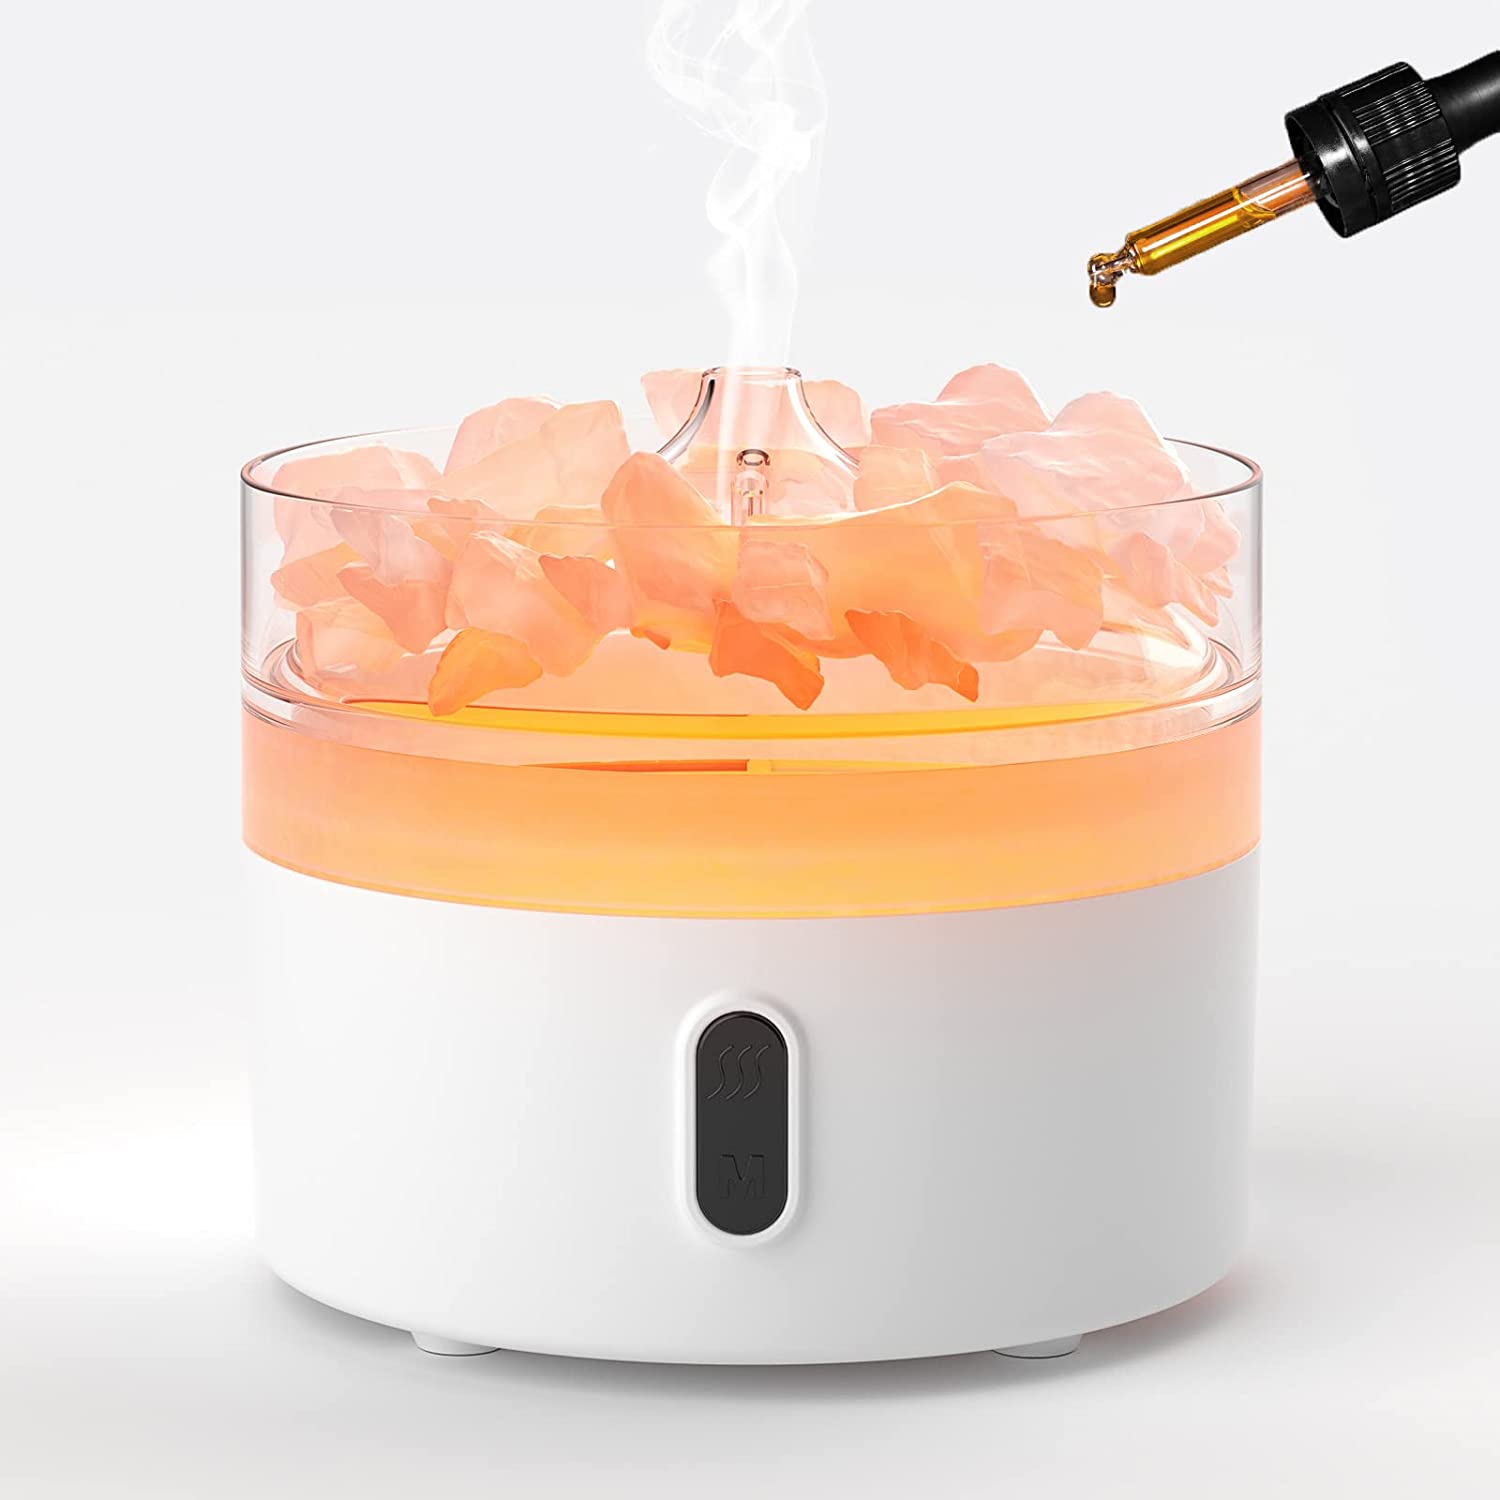 Himalayan Salt Aroma Diffuser - Night Light - USB - Flame Effect